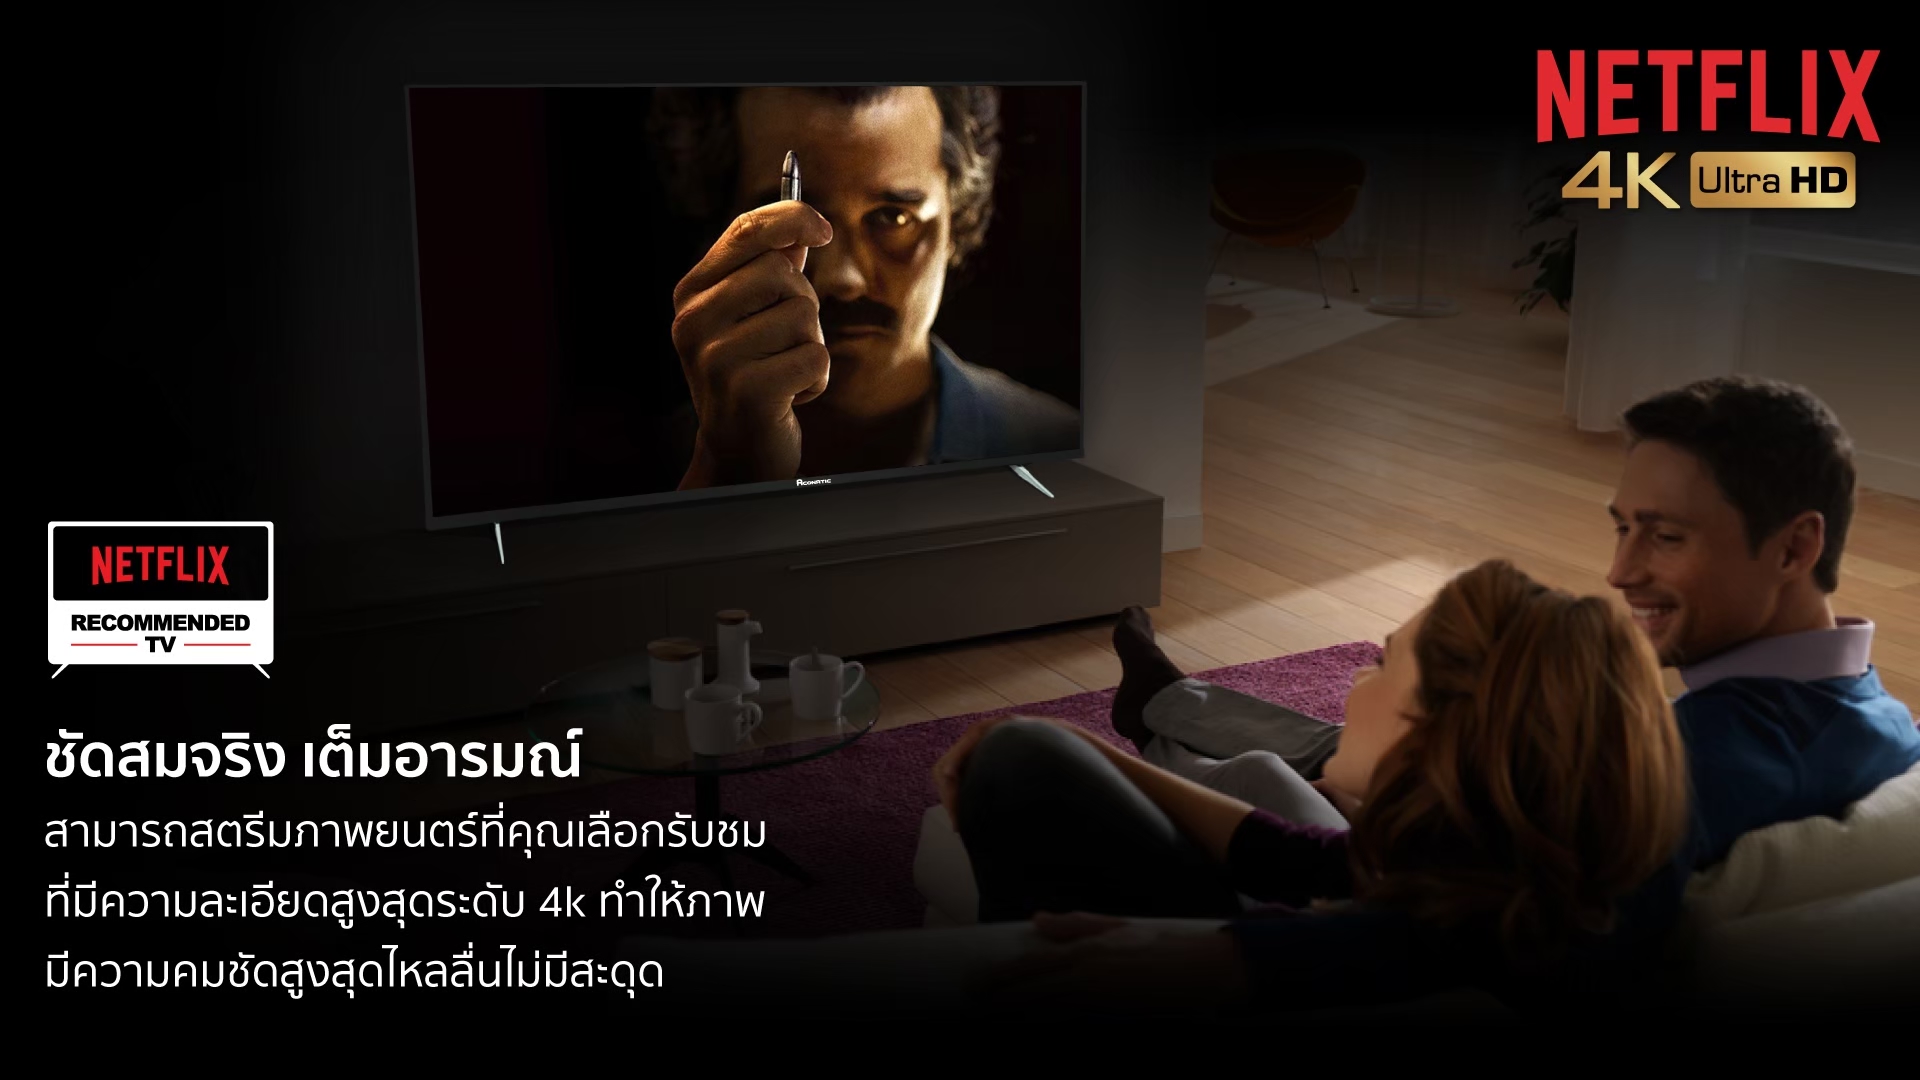 เกี่ยวกับ Aconatic LED Netflix TV Smart TV สมาร์ททีวี (Netflix License) 4K UHD ขนาด 55 นิ้ว รุ่น 55US534AN (รับประกัน 3 ปี)